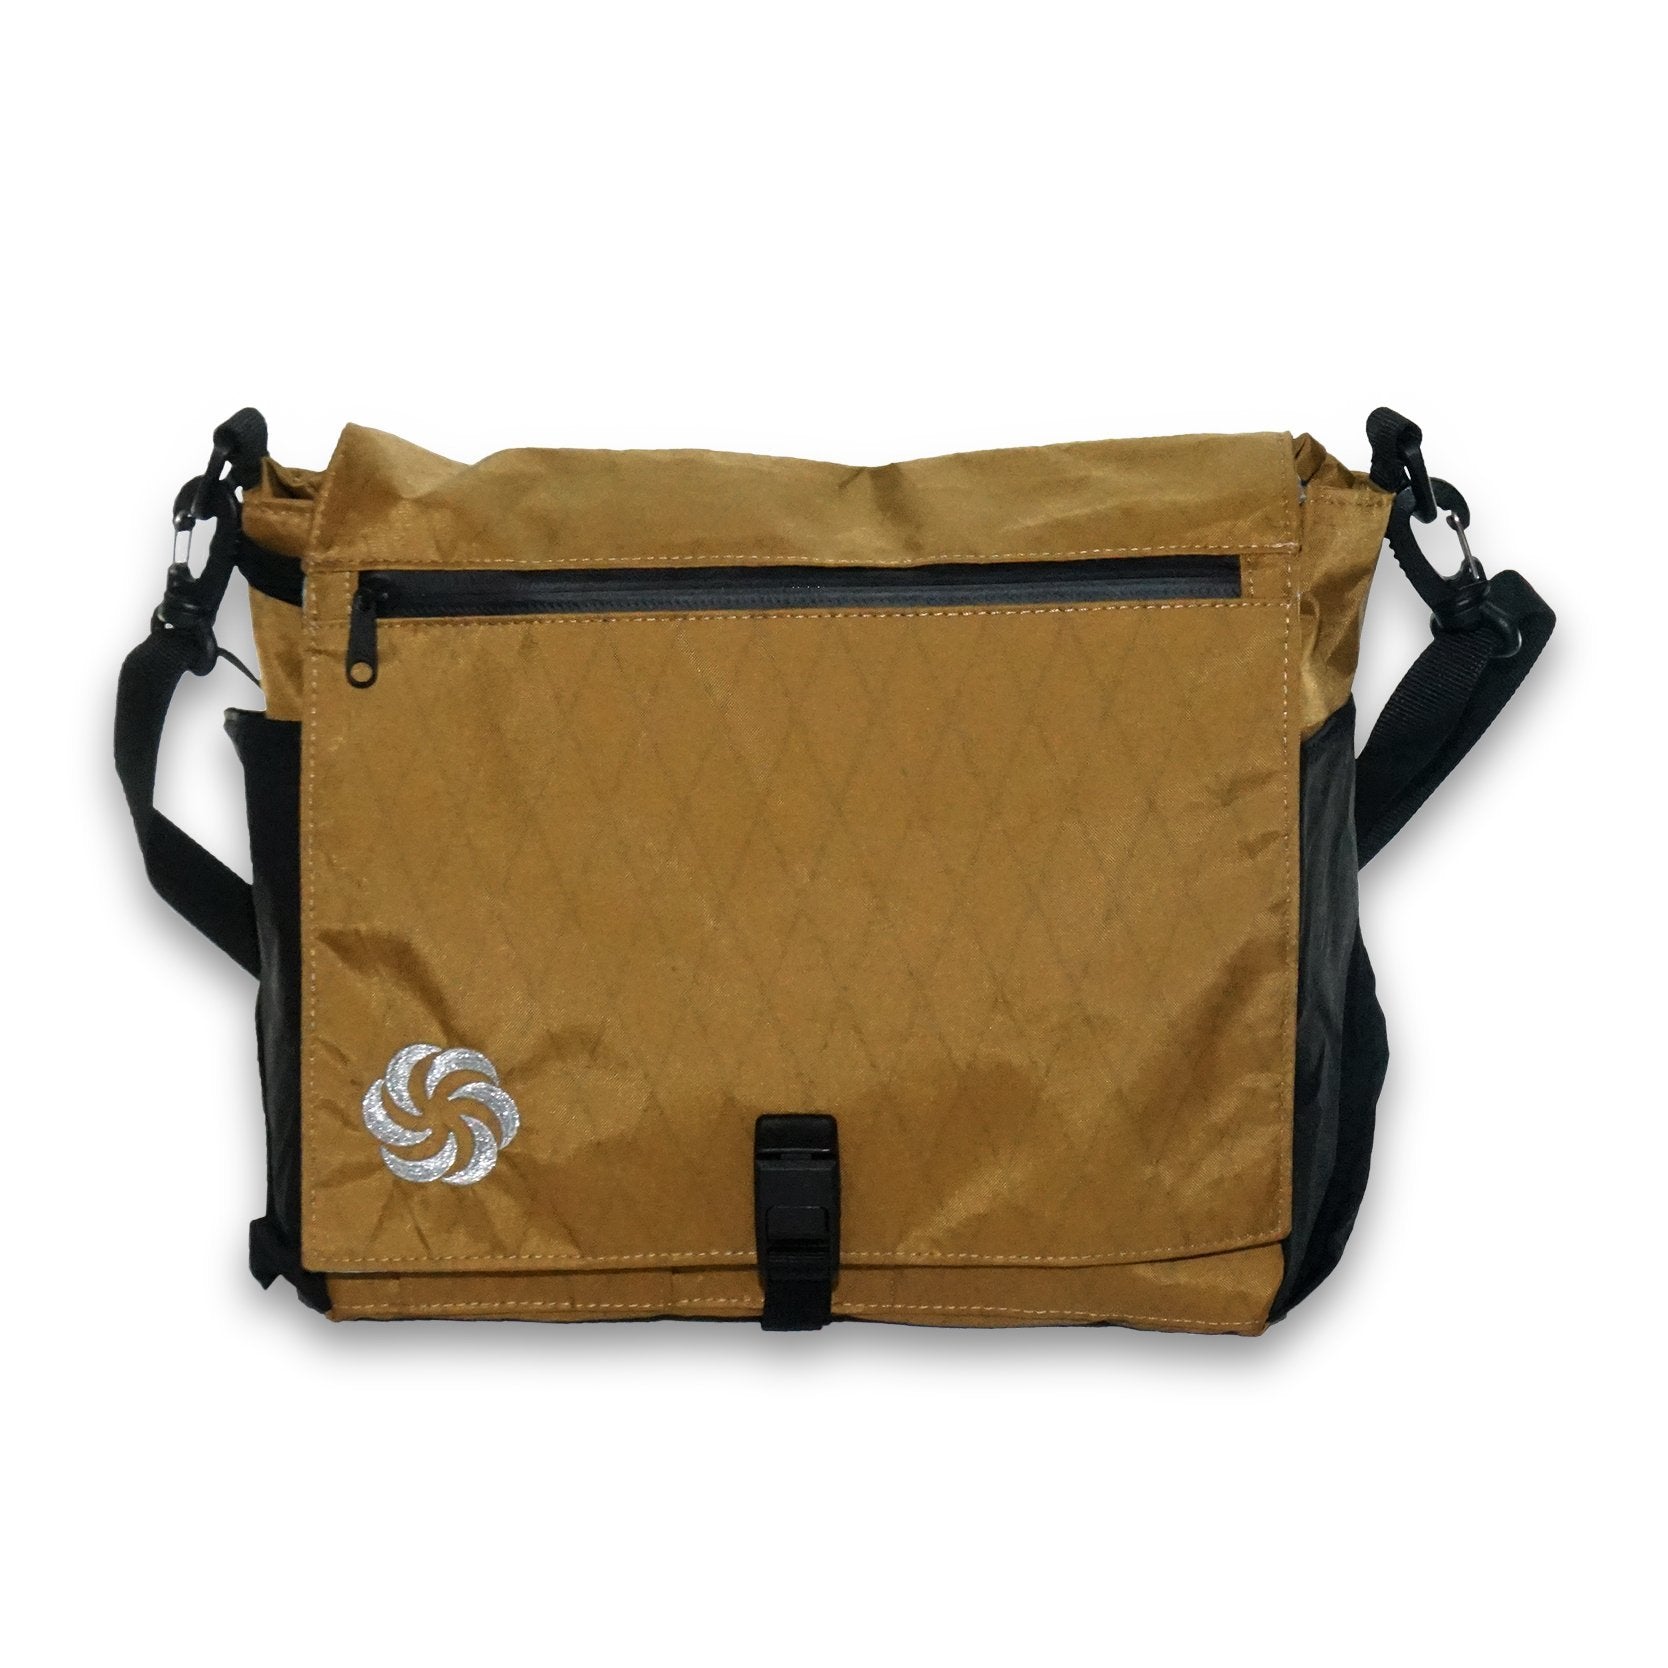 ePouch Zero-G Travel Bag